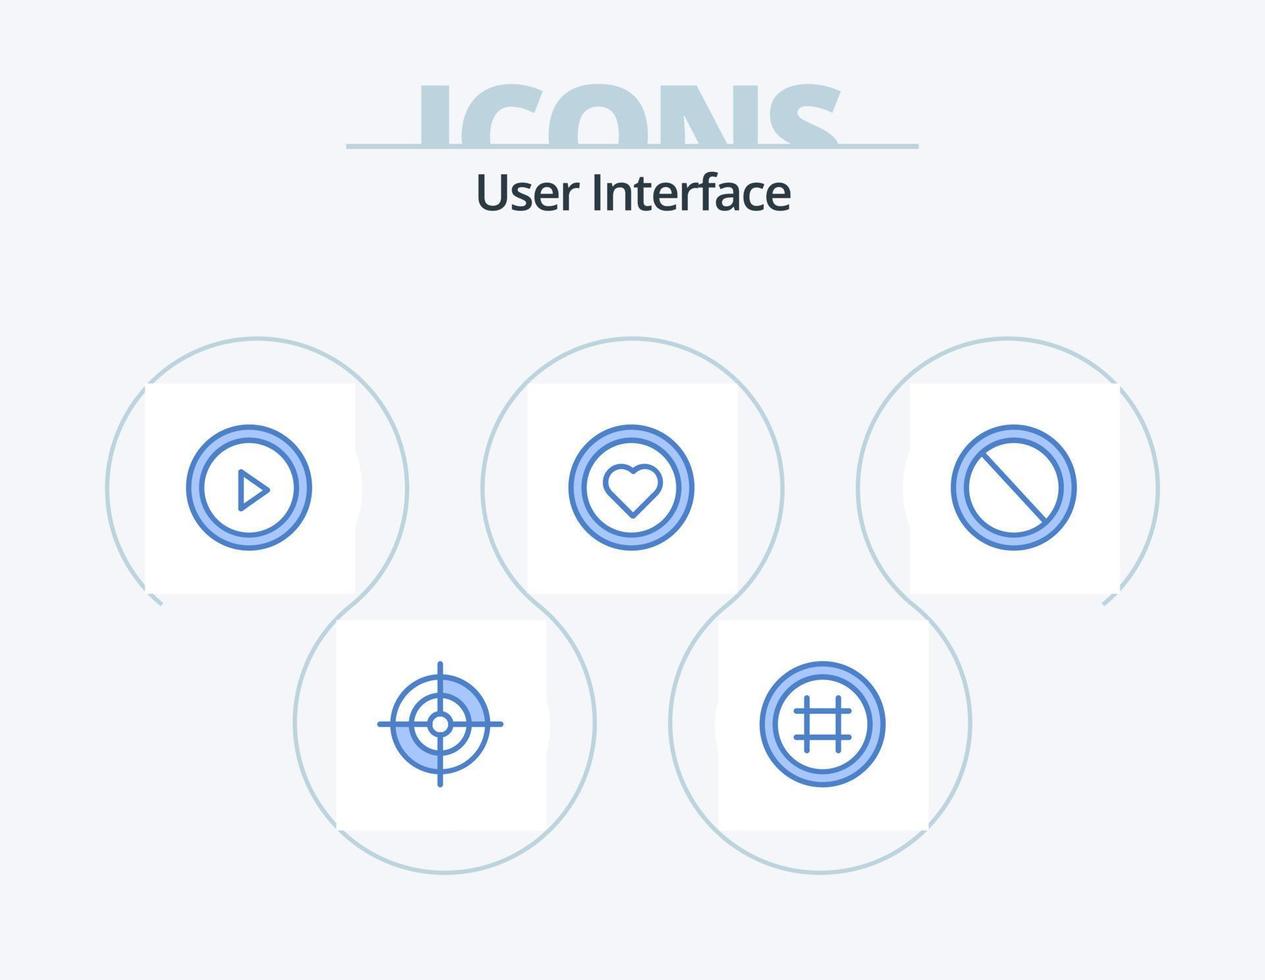 interfaz de usuario paquete de iconos azules 5 diseño de iconos. usuario. no. tocar. interfaz. amar vector